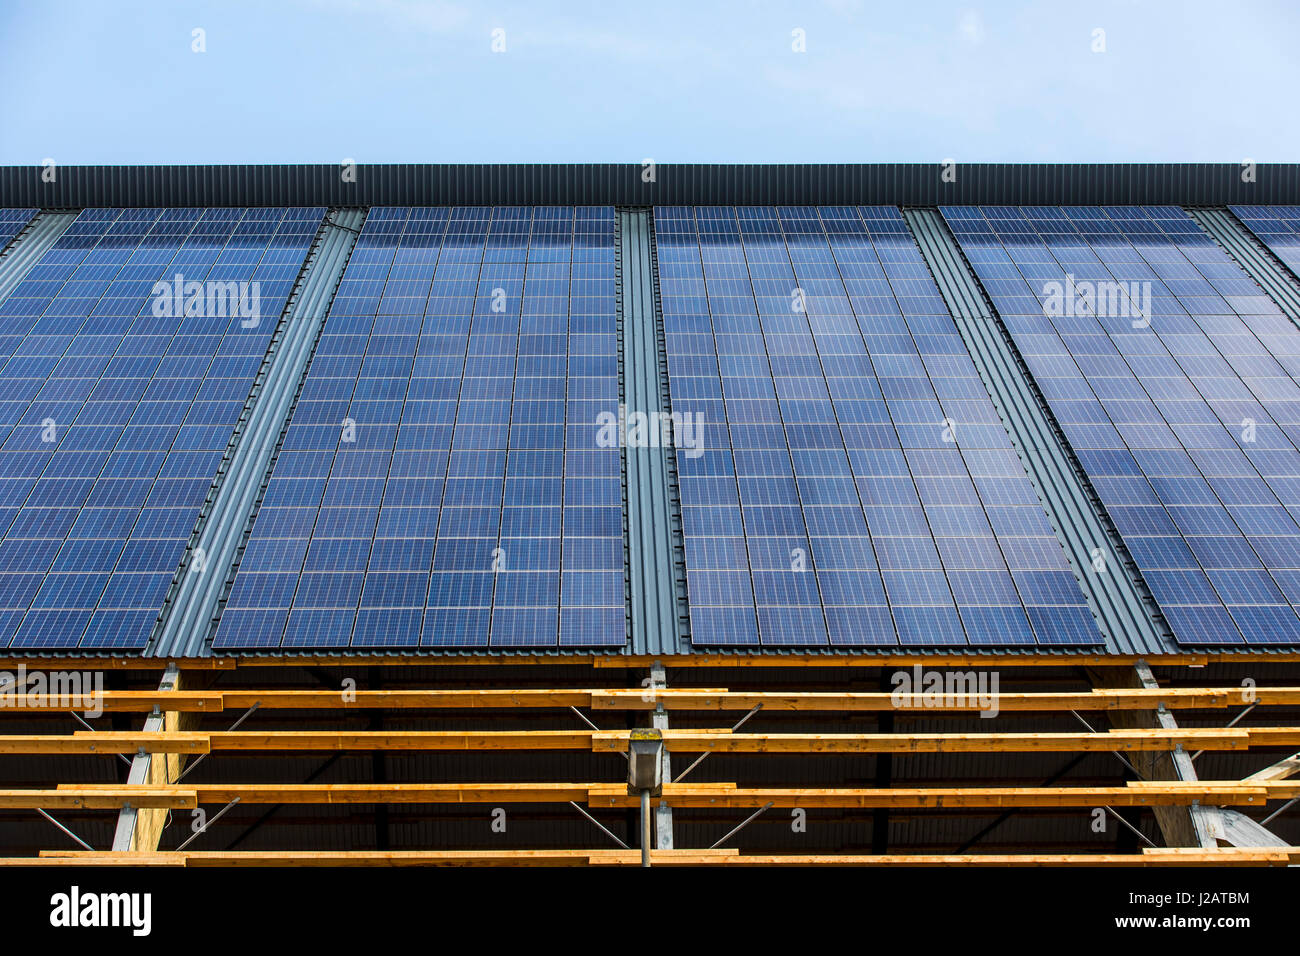 Toit de panneaux solaires, l'énergie solaire sur le toit d'un hall logistique, de la fermeture de la mine Lohberg, de Dinslaken, l'Allemagne, l'usine éolienne Banque D'Images